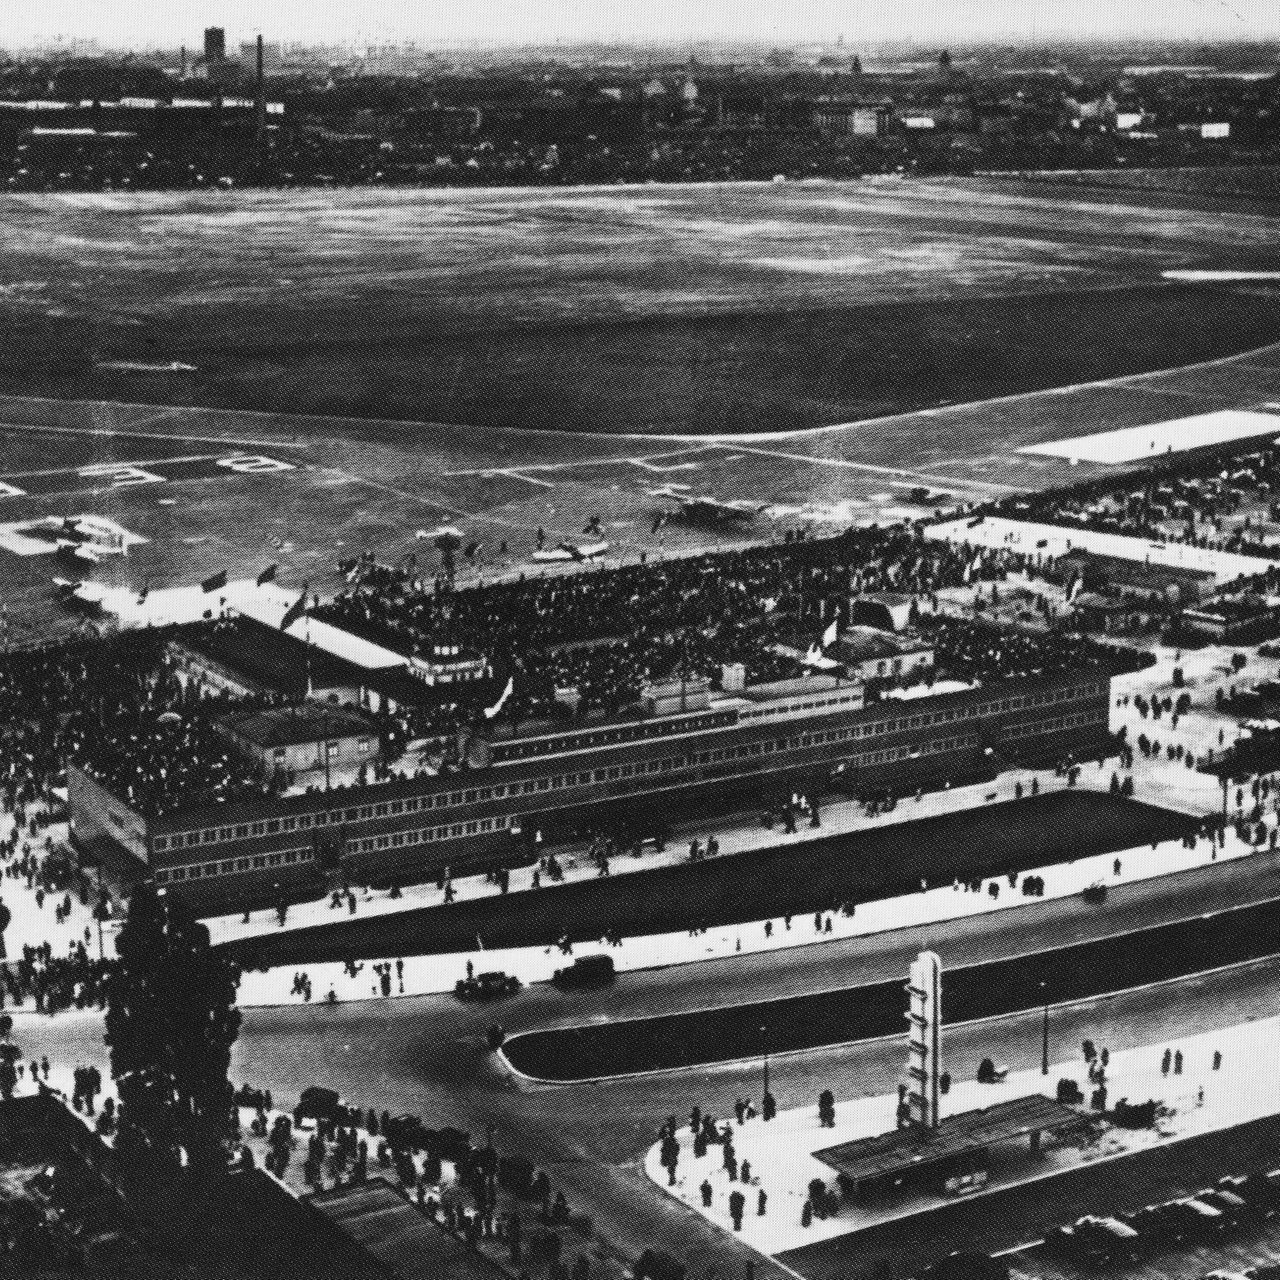 Luftbild des Flughafengeländes Berlin-Tempelhof um 1930.